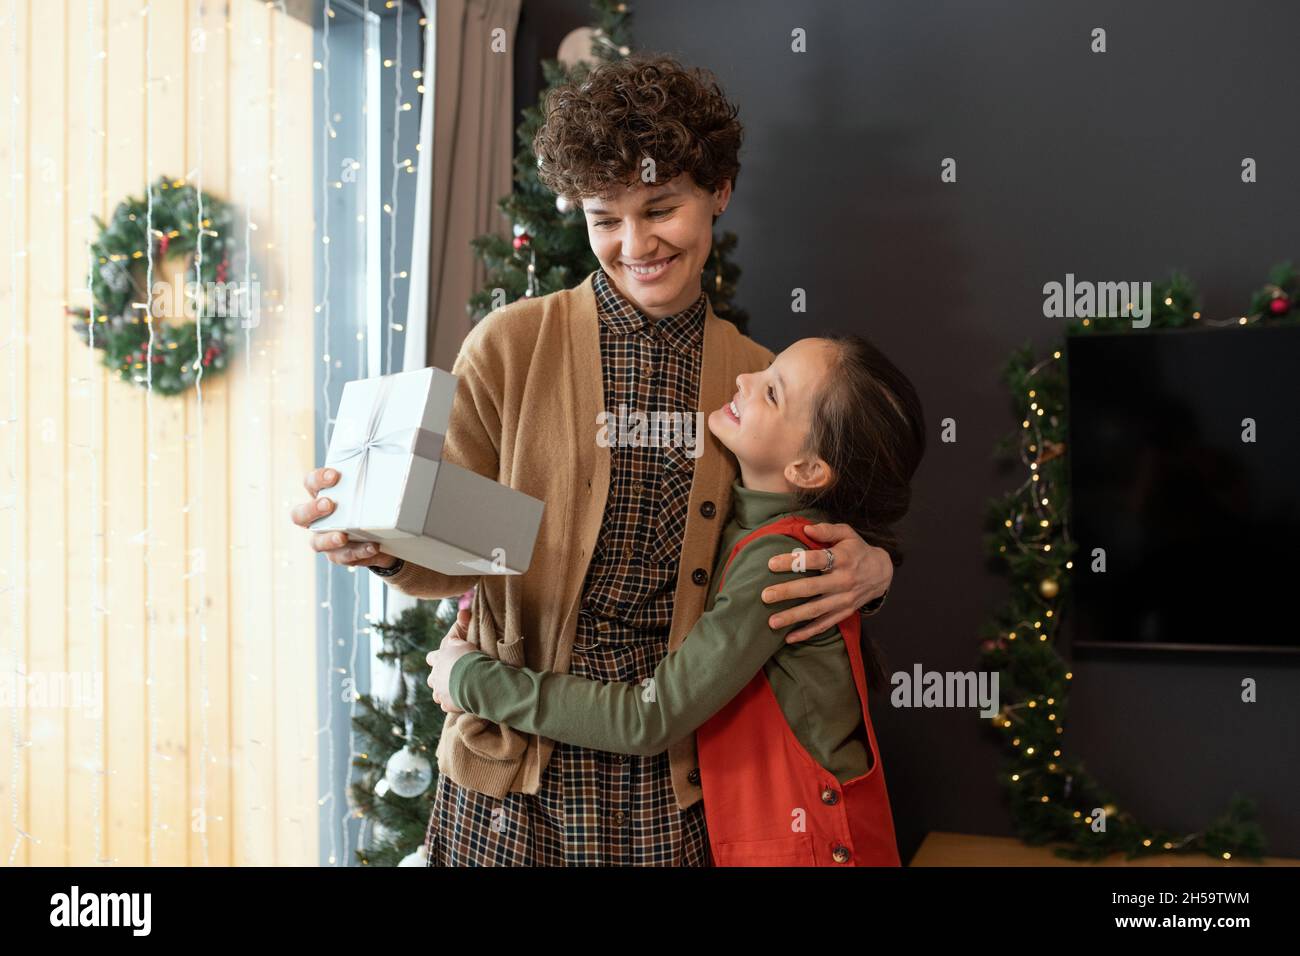 Lächelnde, lockige Frau umarmt die Tochter, während sie zu Hause Weihnachtsgeschenk von ihr erhält Stockfoto